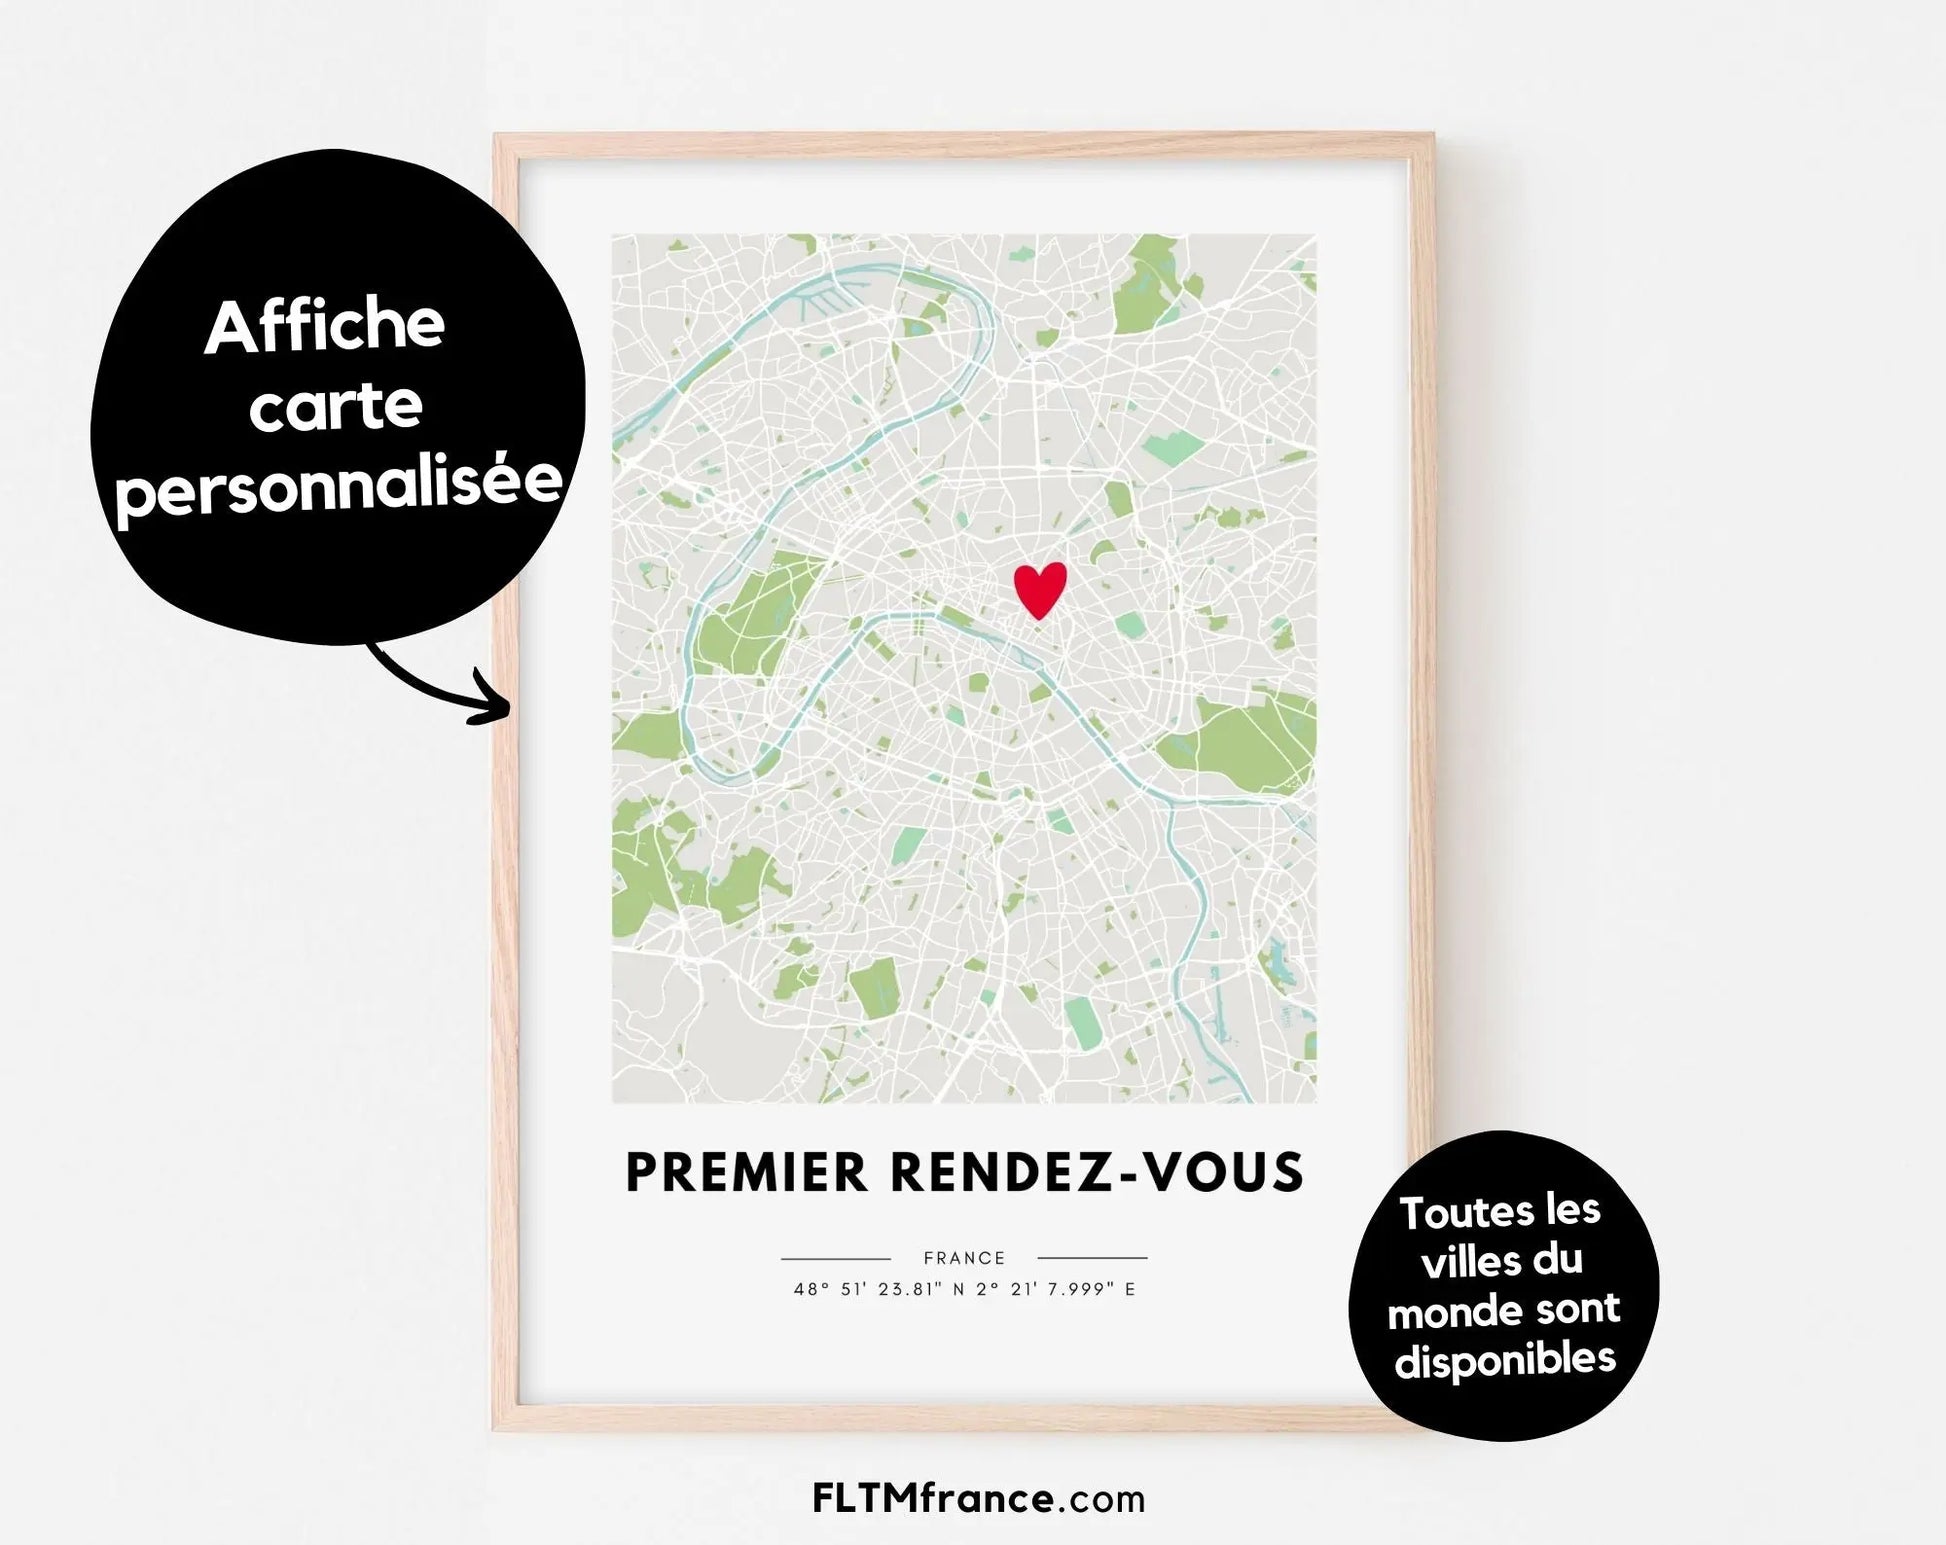 Premier rendez-vous - Affiche carte de ville personnalisée FLTMfrance